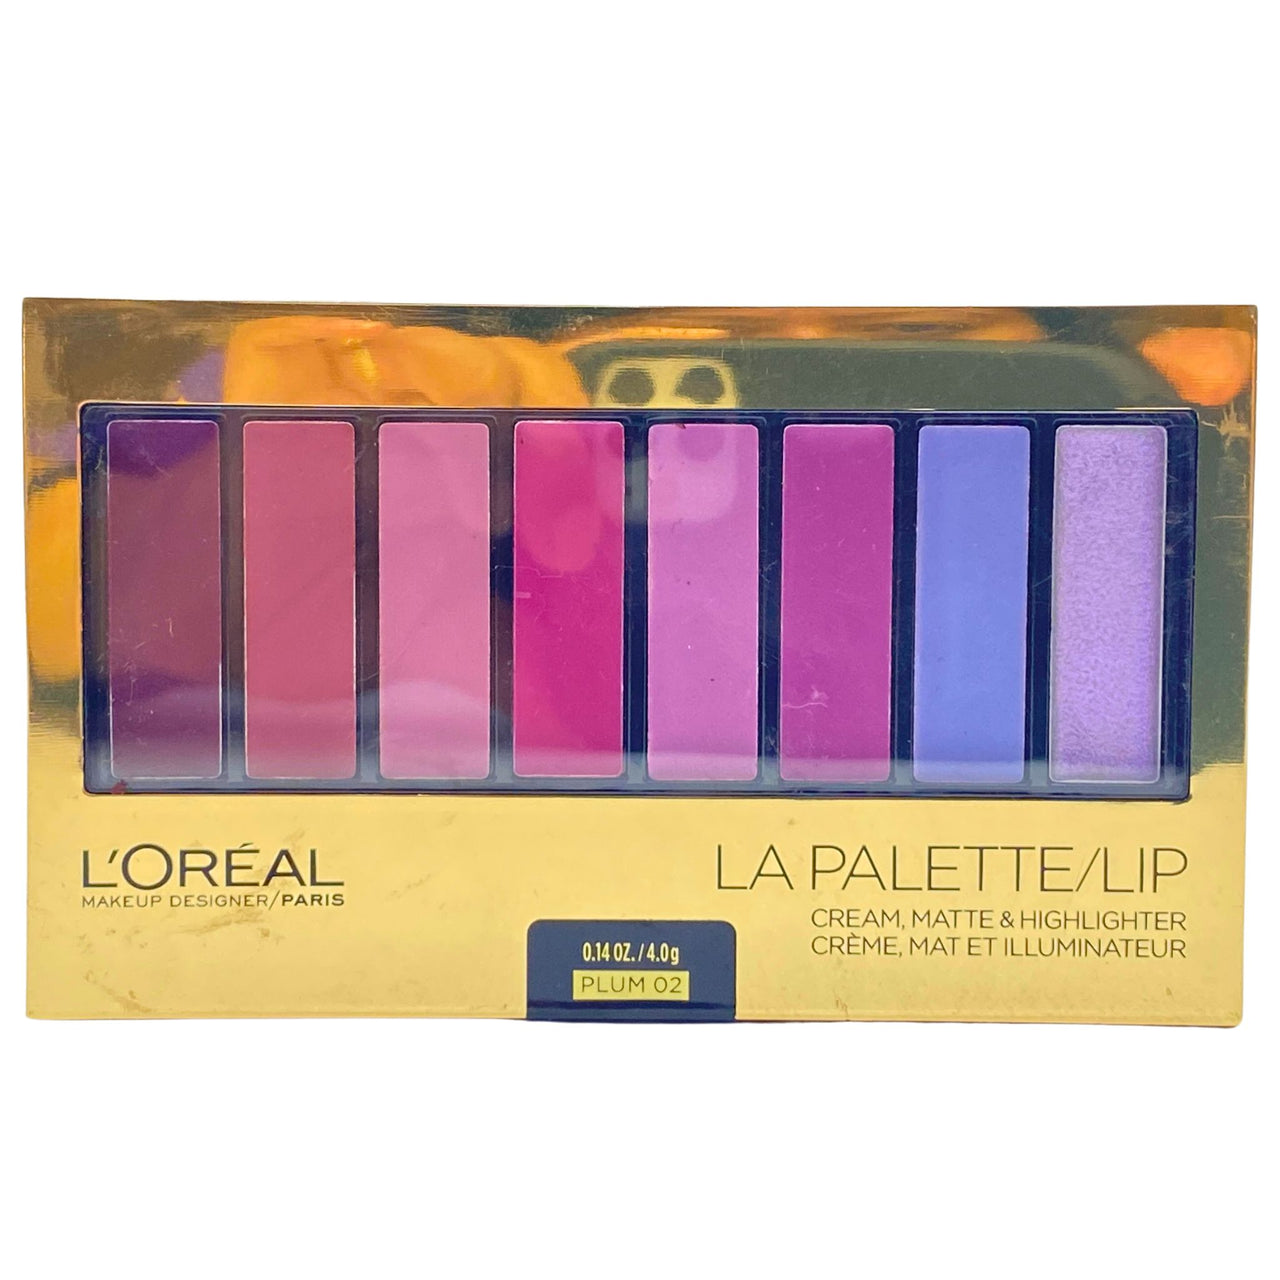 L'Oreal Makeup Designer La Palette/Lip Cream,Matte & Highlighter